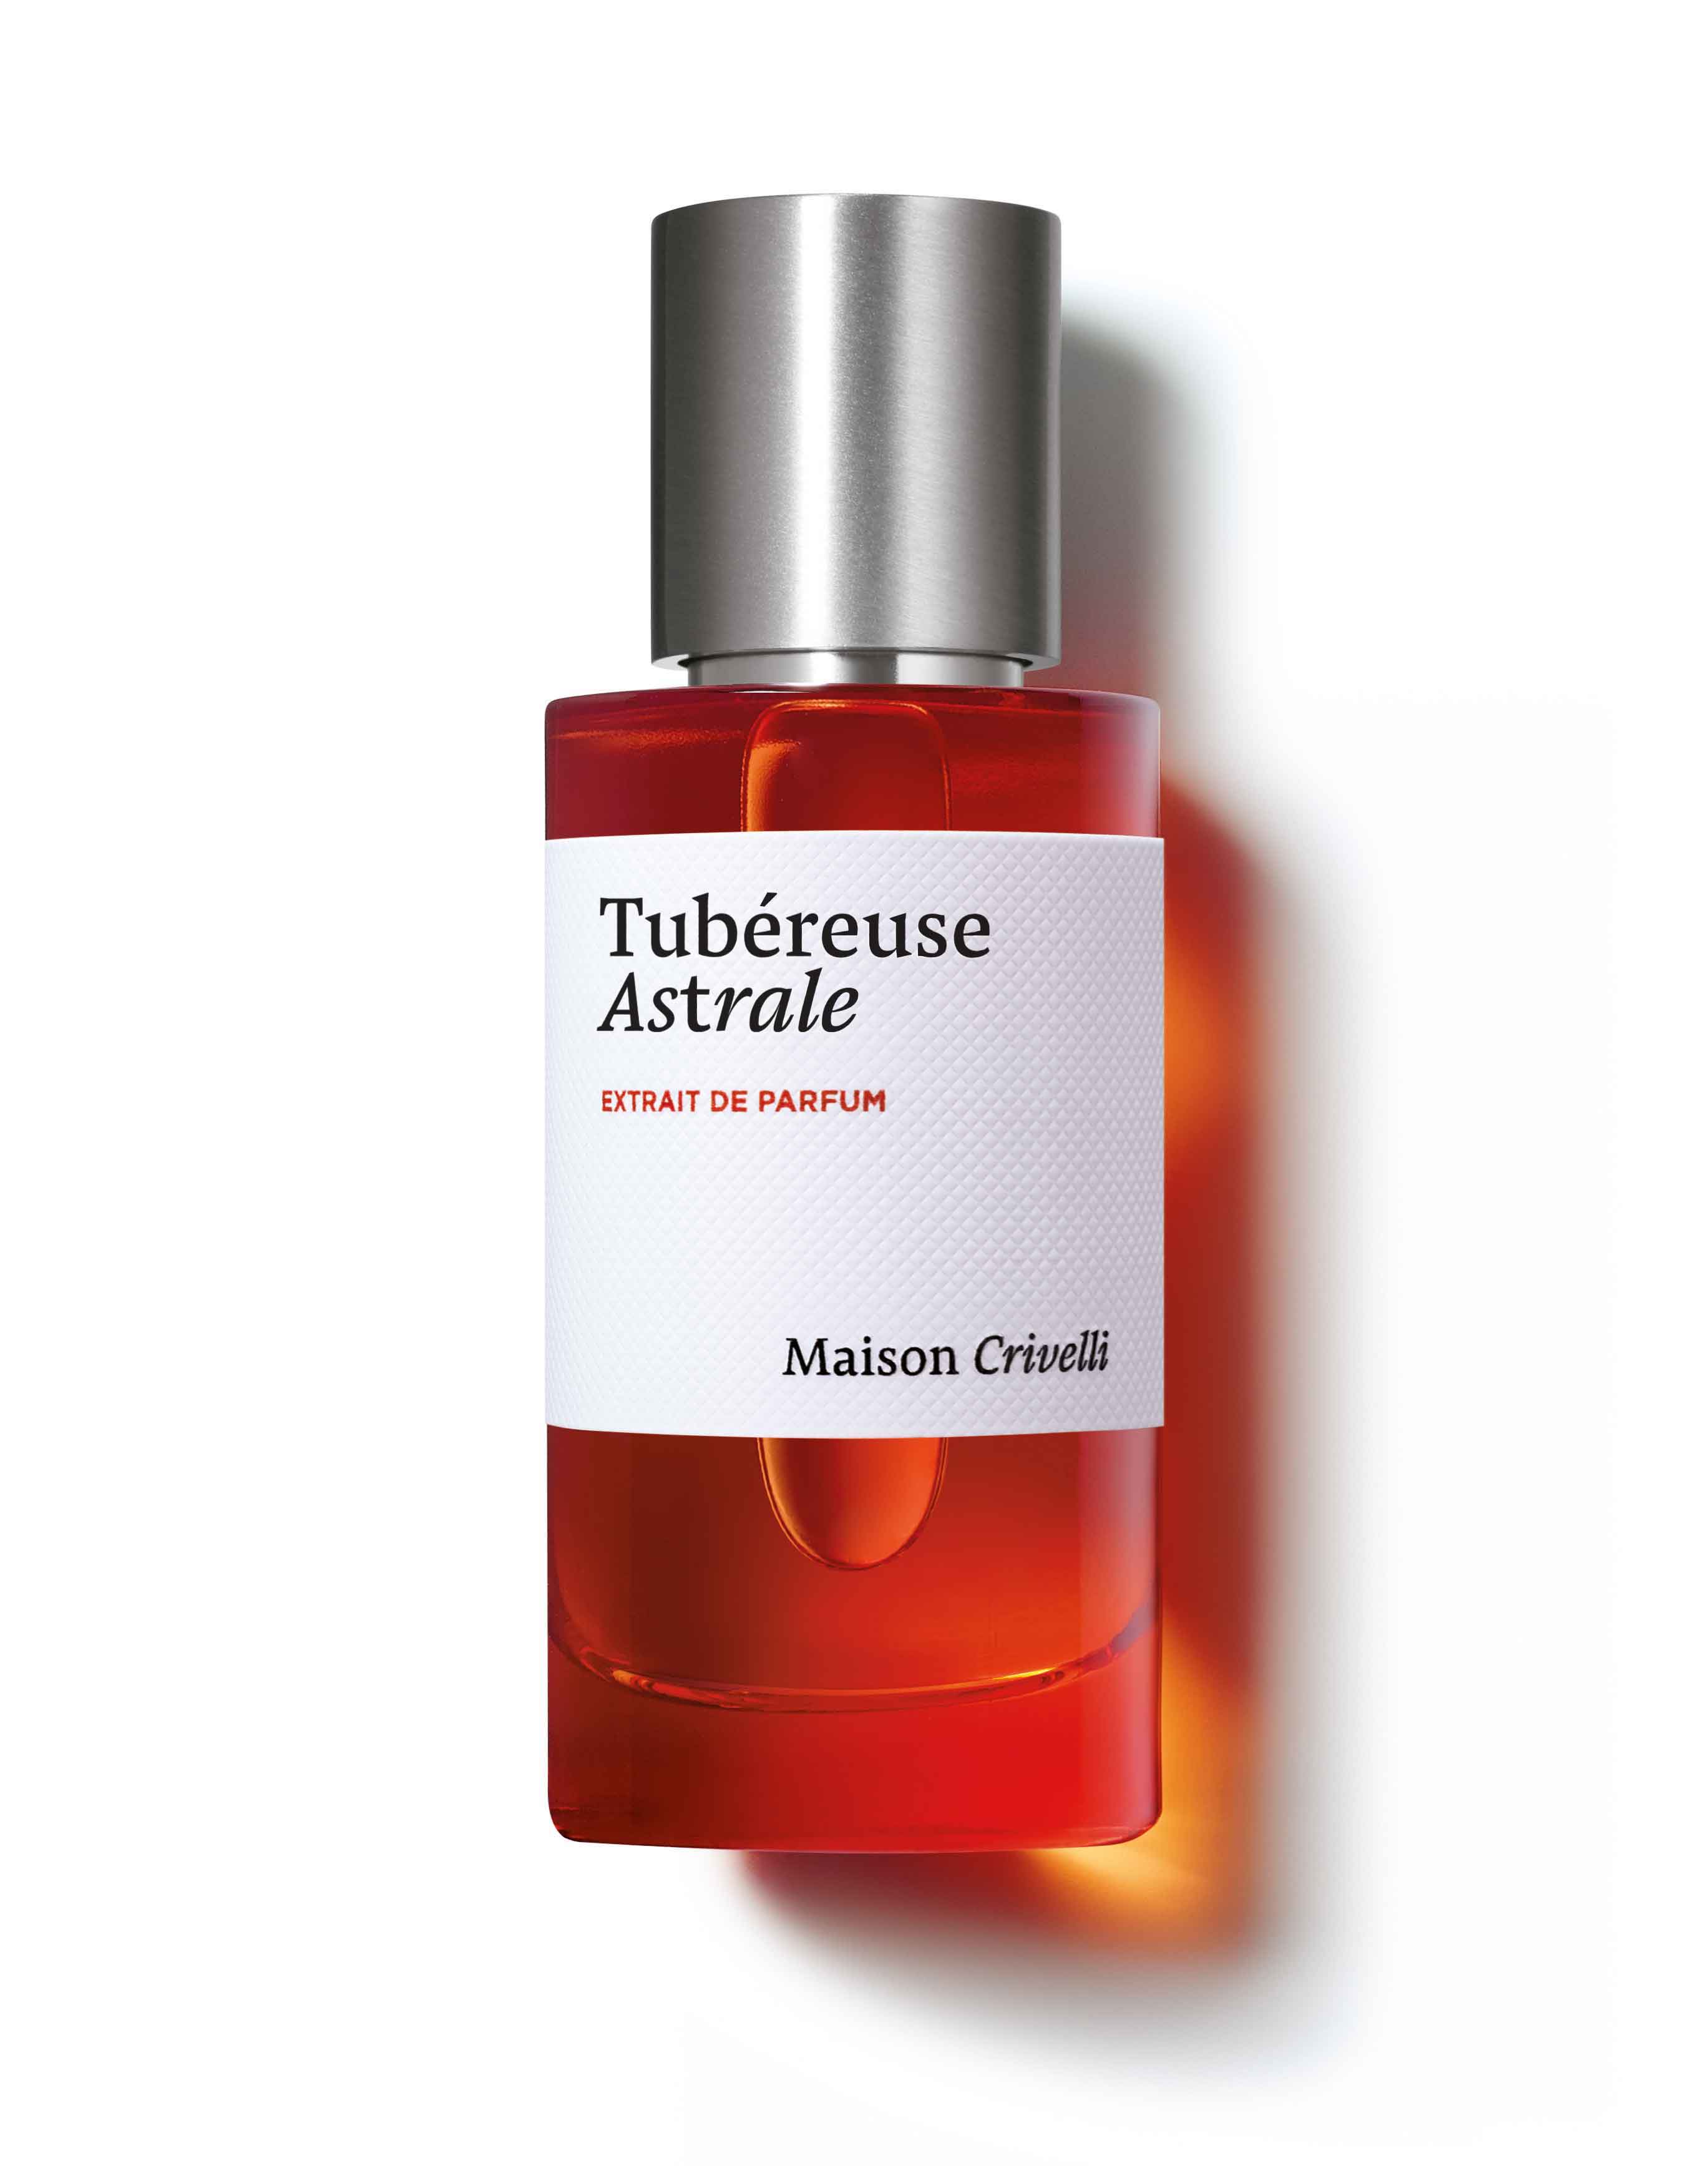 Tubéreuse Astrale Extrait de Parfum 50ml | € 200